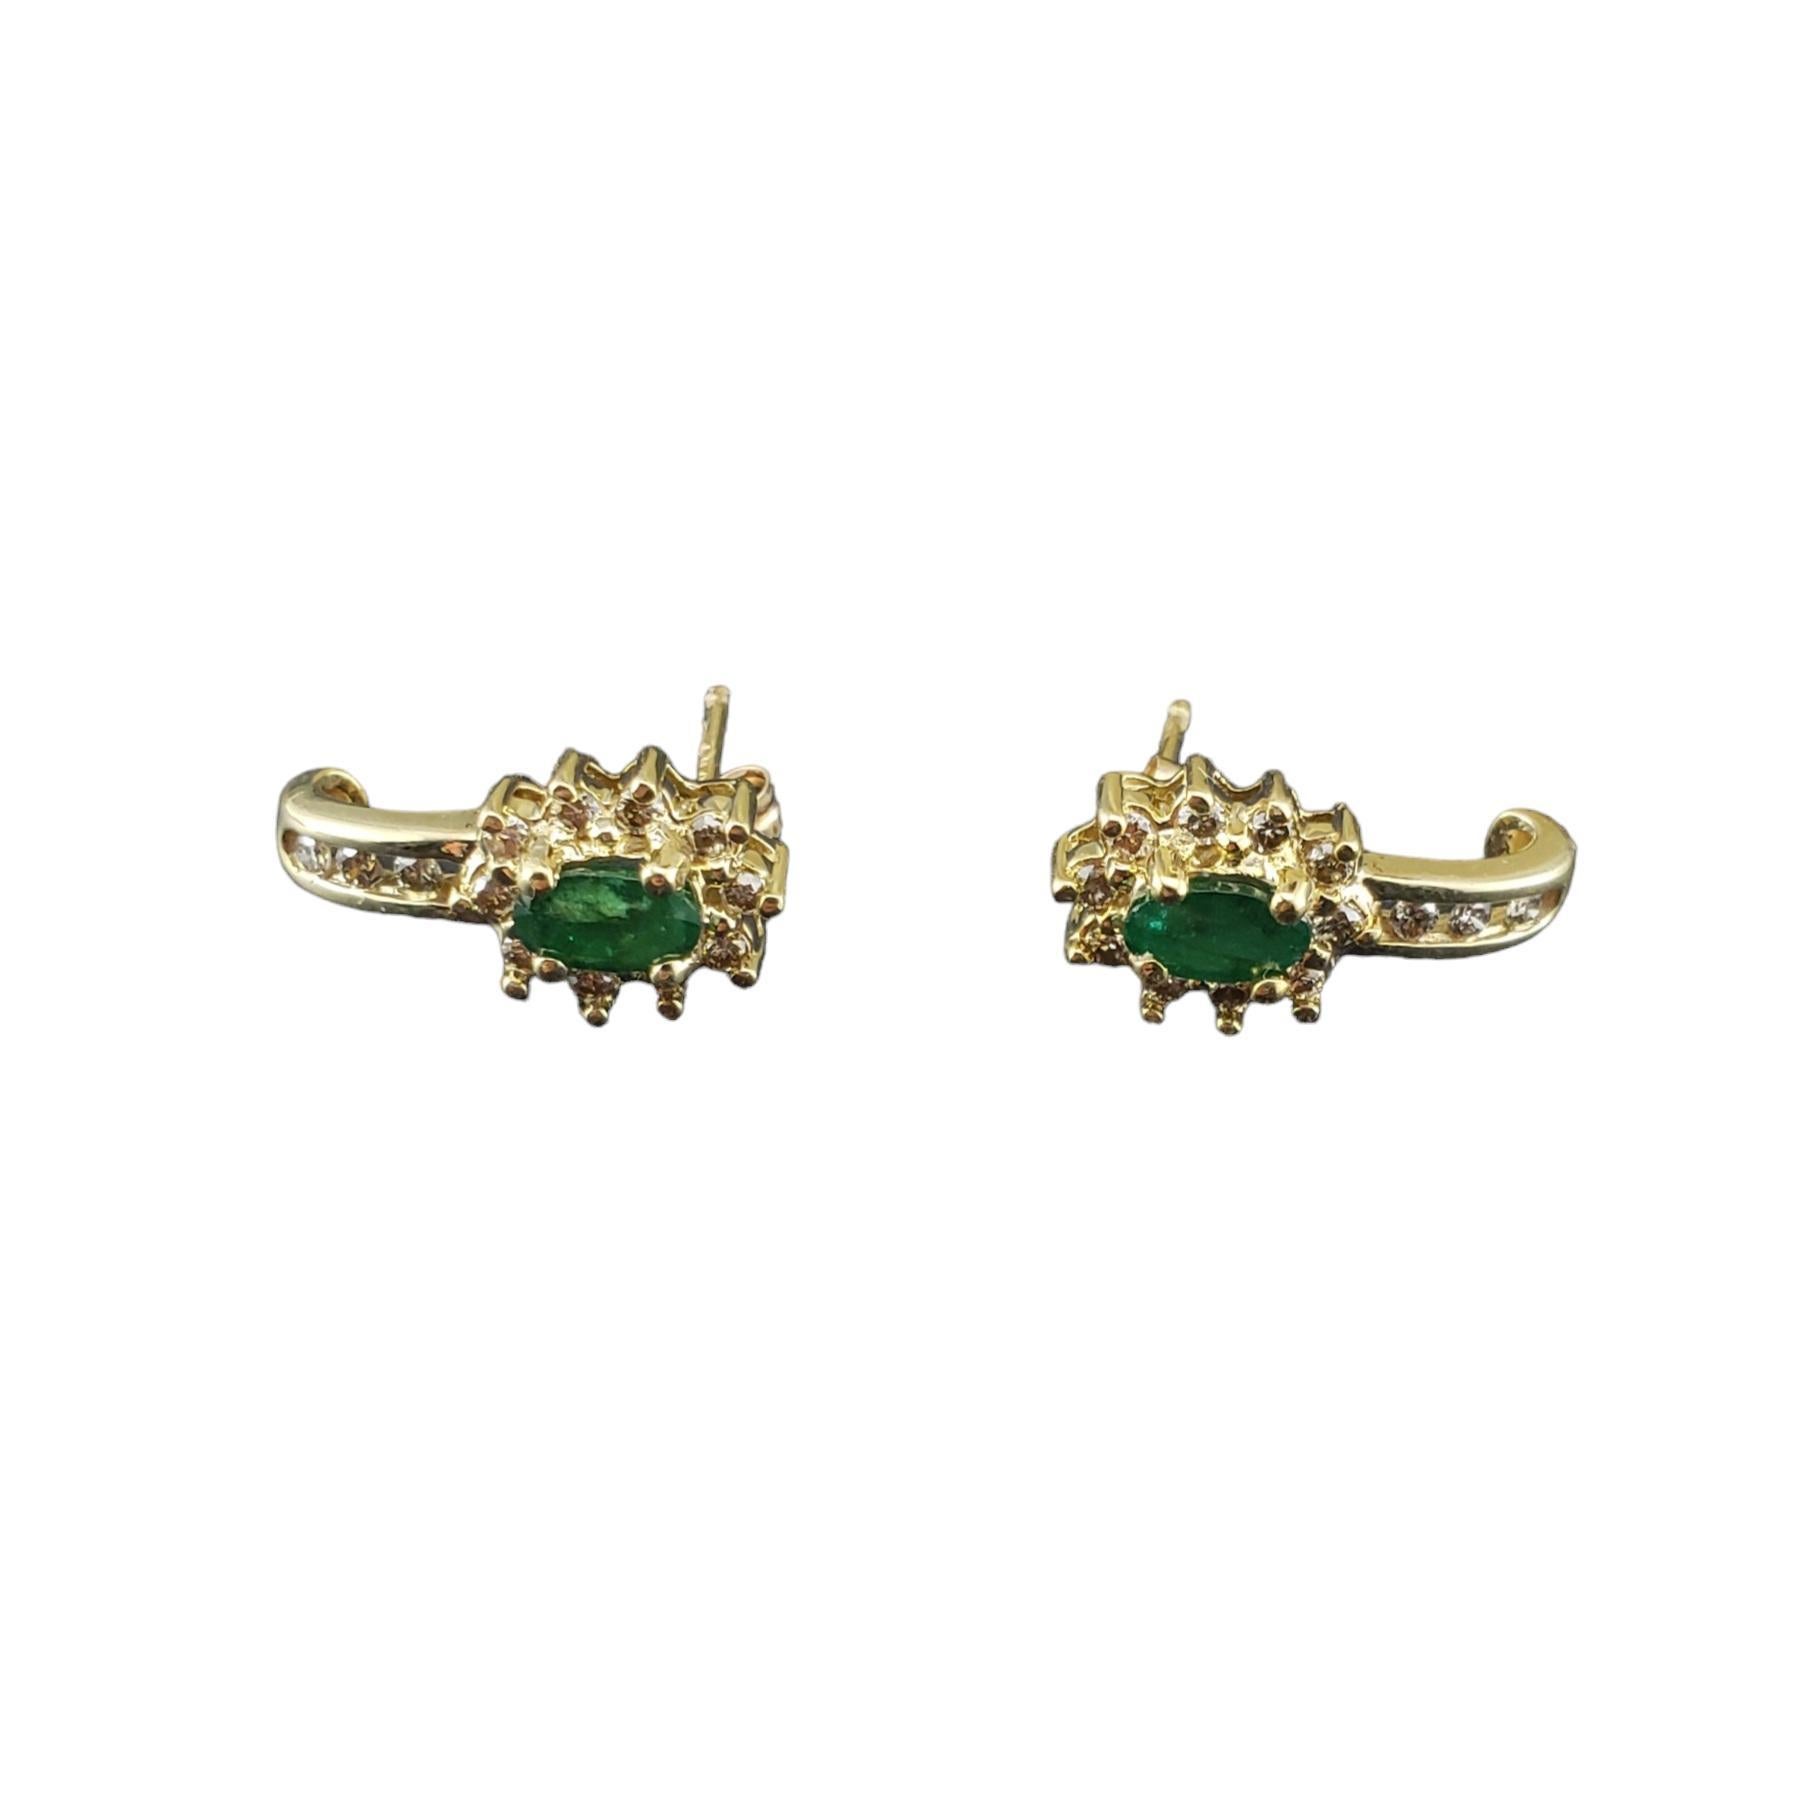 Vintage 14 Karat Gelbgold Smaragd und Diamant-Ohrringe JAGi zertifiziert-

Diese atemberaubenden Ohrringe sind mit je zwei natürlichen Smaragden im Ovalschliff (5 mm x 2,9 mm) und 13 runden Diamanten im Brillantschliff in klassischem 14-karätigem